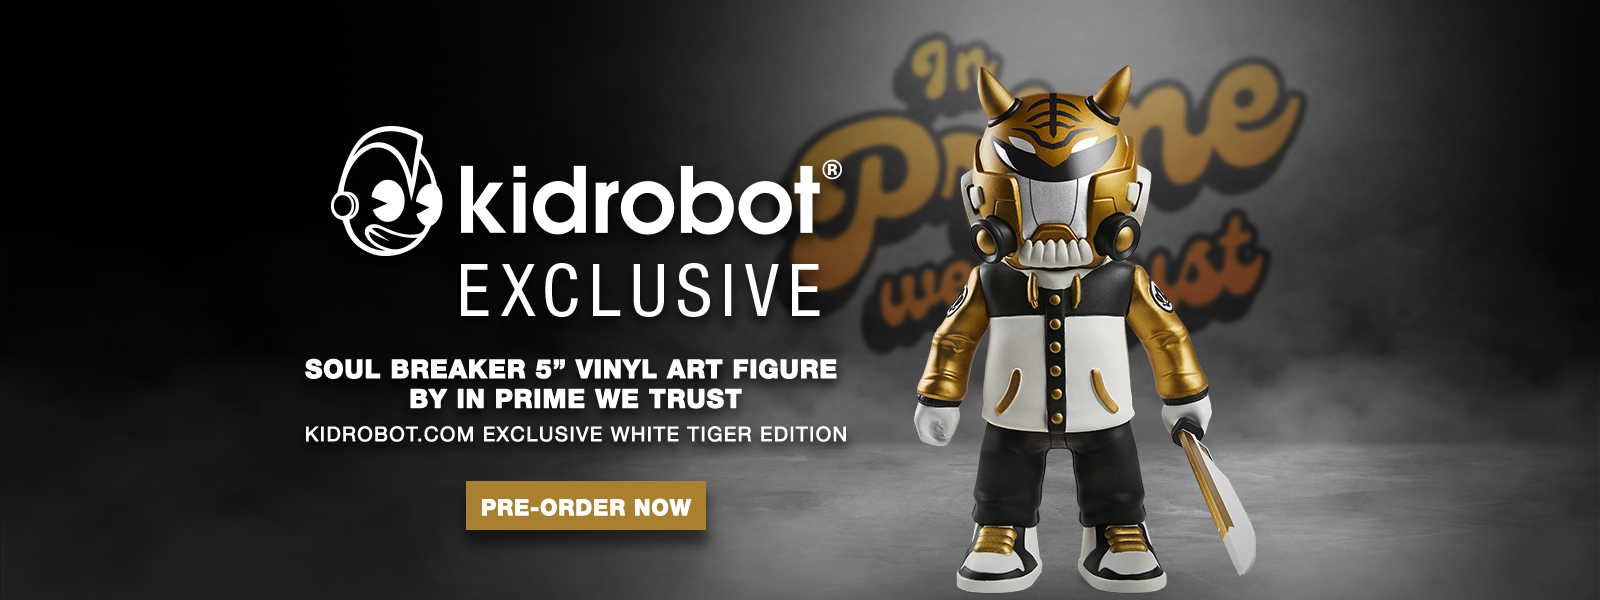 Kidrobot.com Exclusive Soul Breaker 5" Vinyl Figure